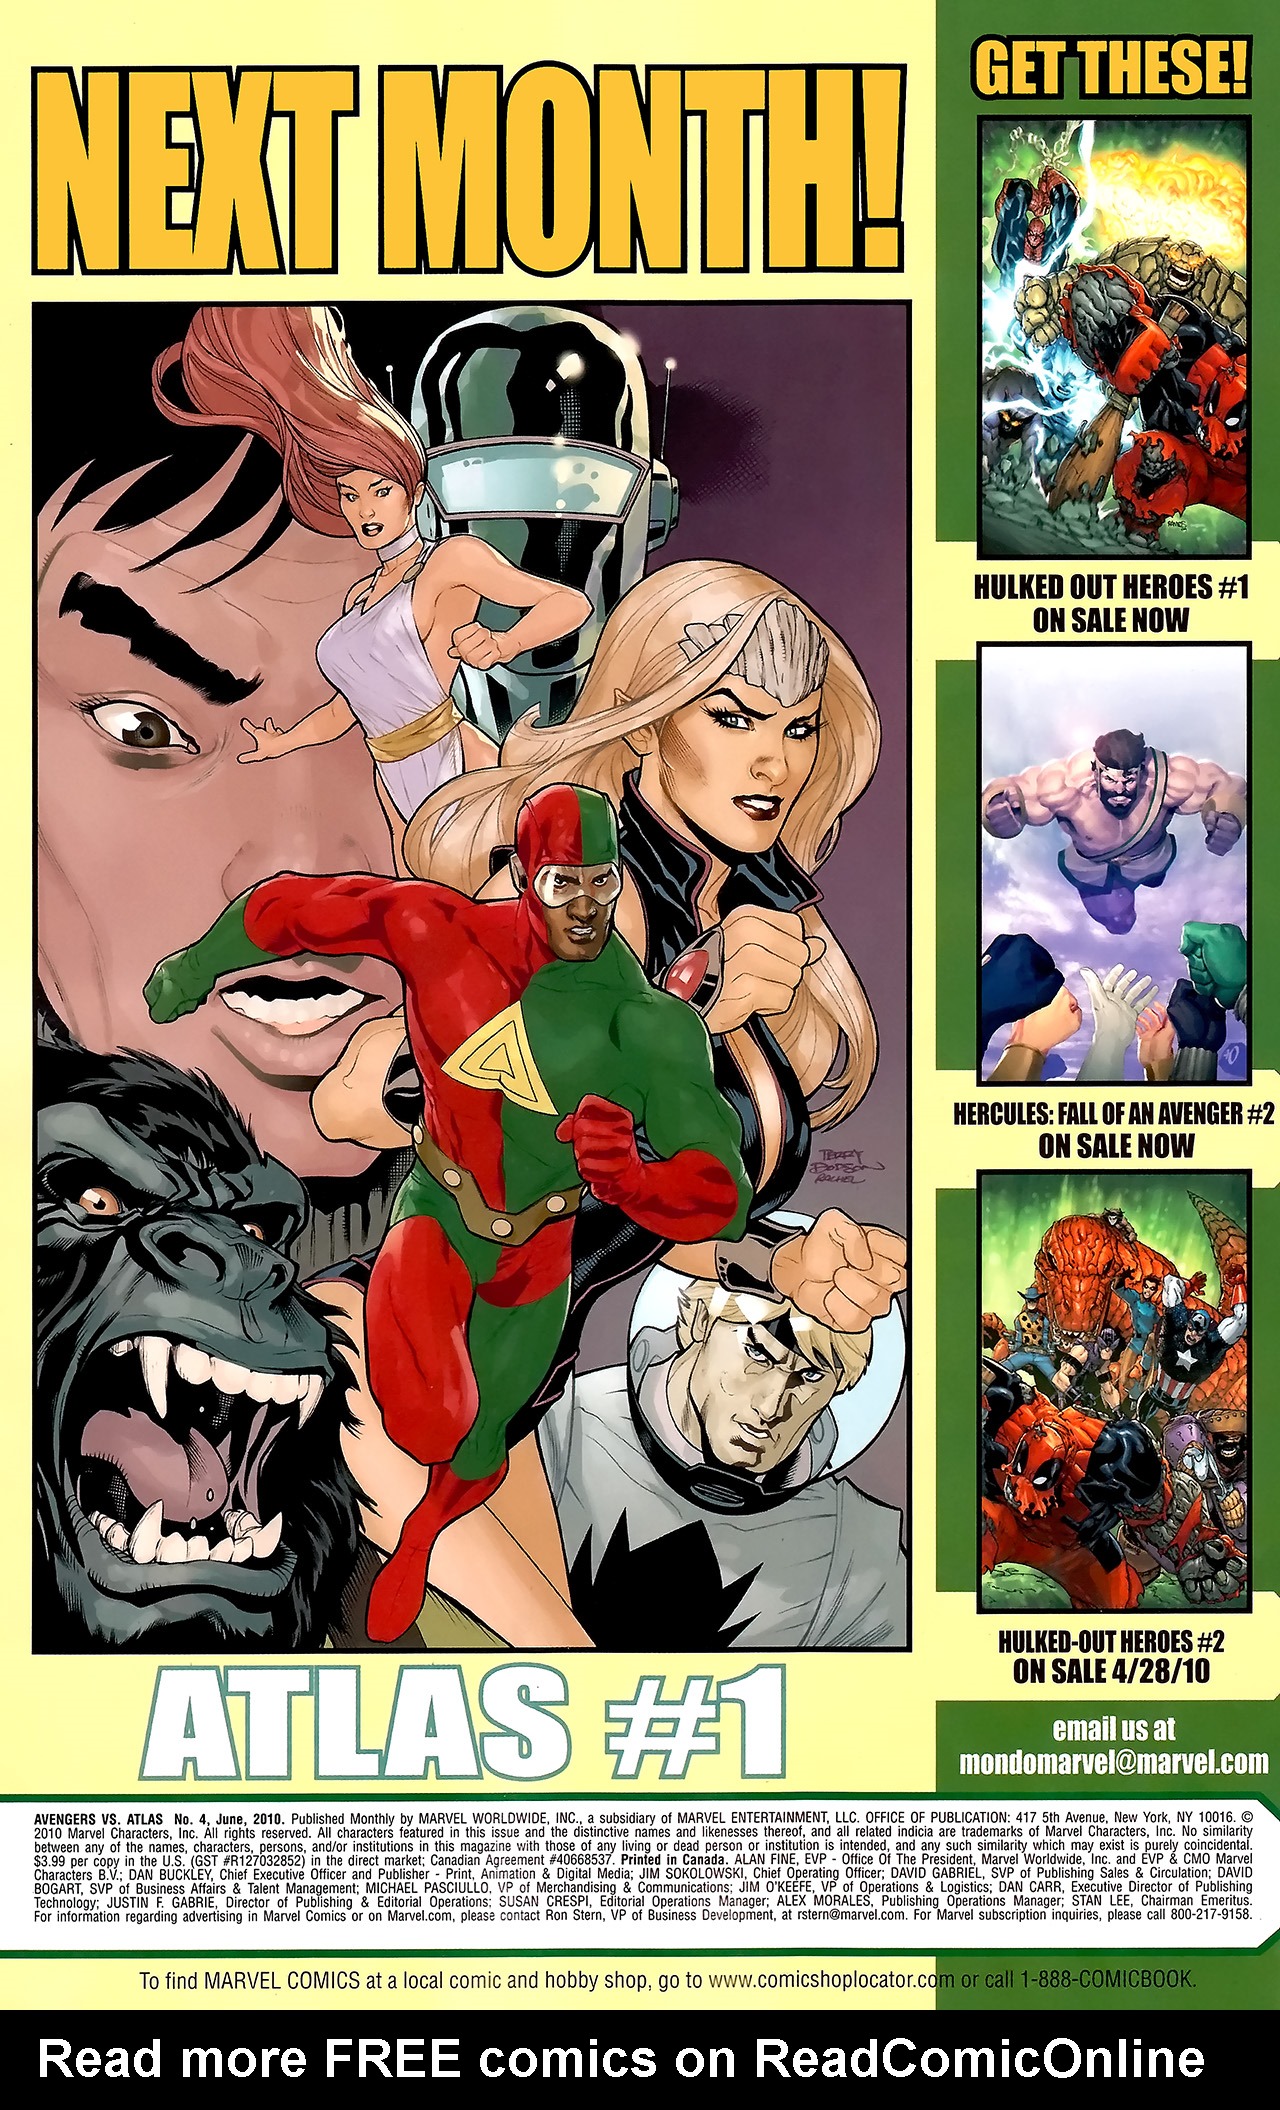 Read online Avengers vs. Atlas comic -  Issue #4 - 33